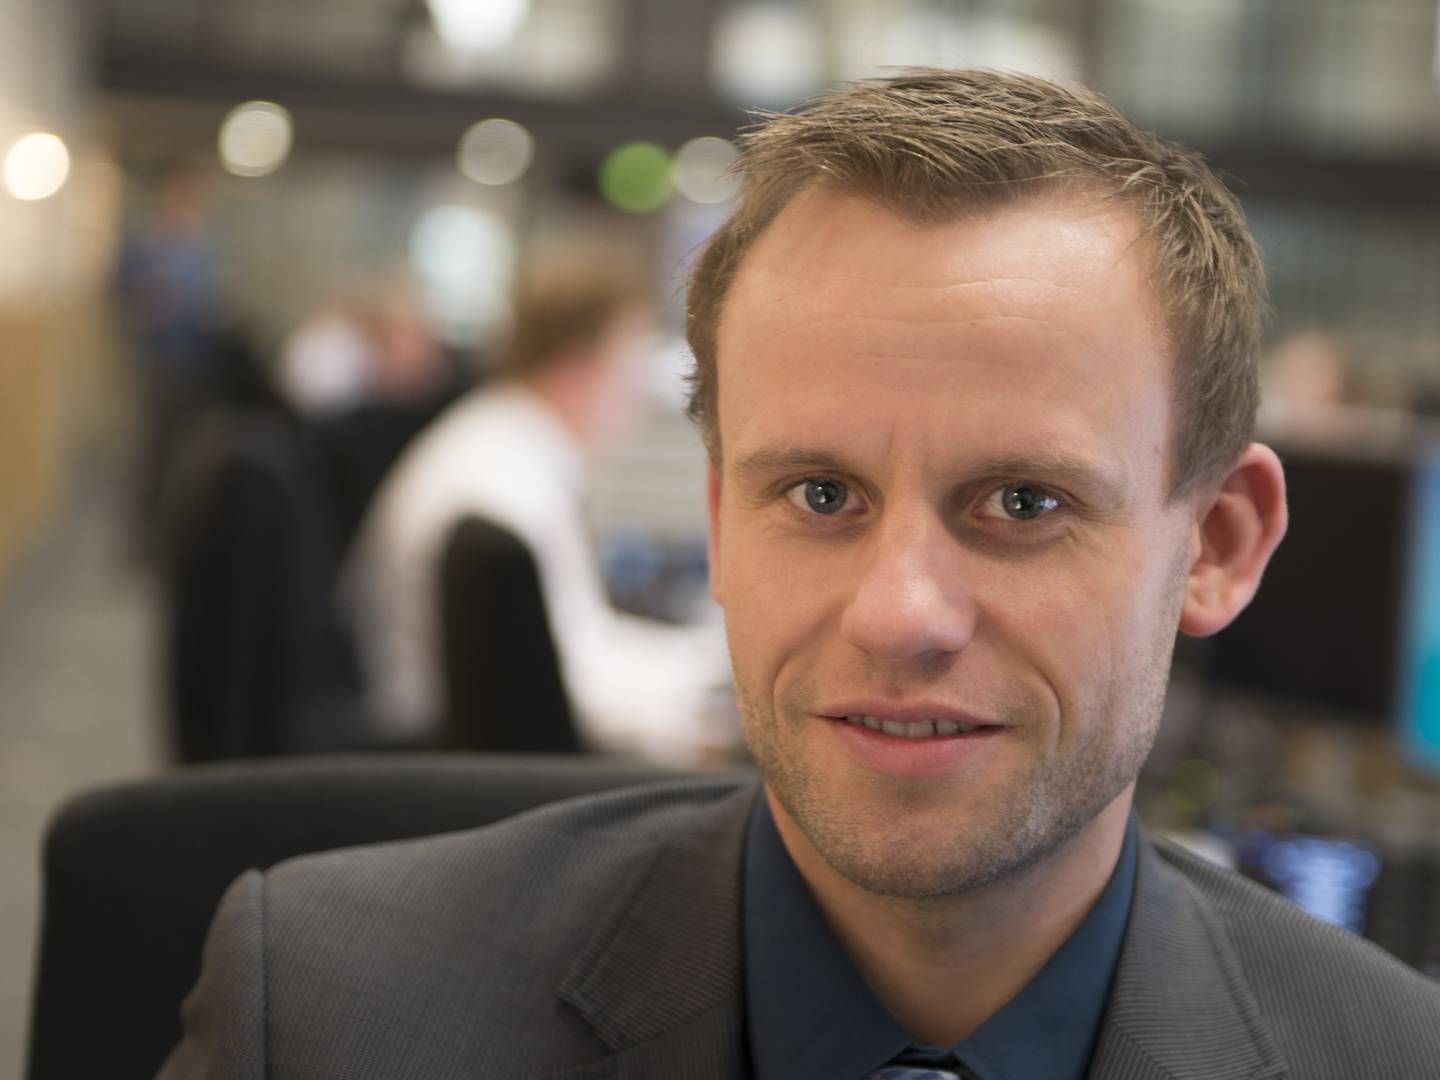 Søren Løntoft Hansen, senior equity analyst at Sydbank | Photo: sydbank / pr